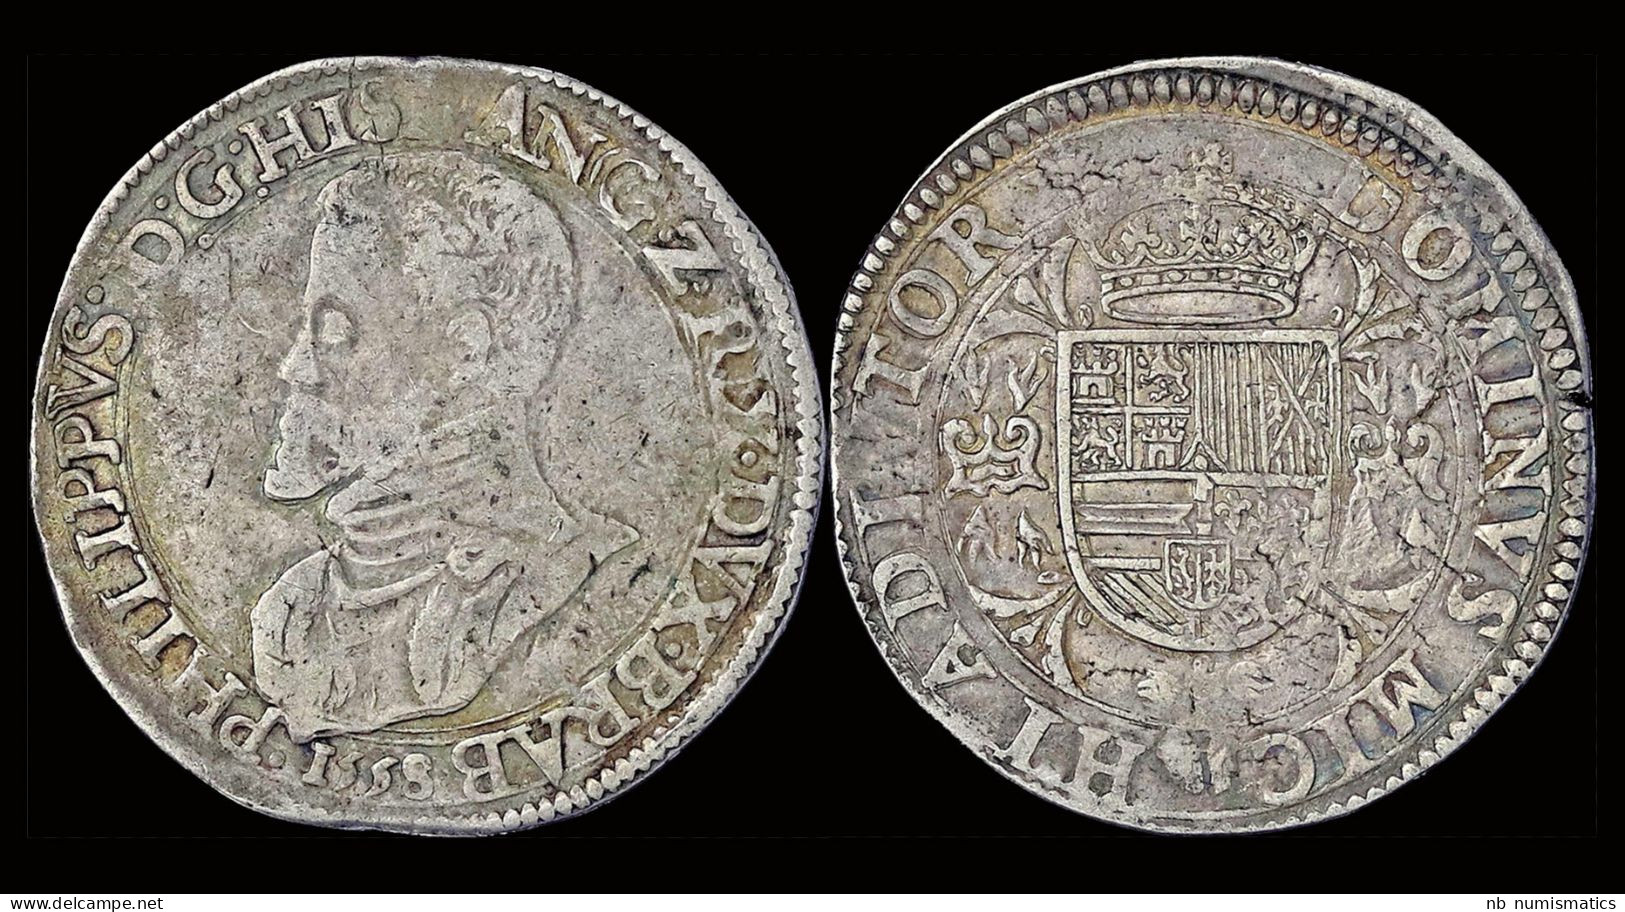 Southern Netherlands Brabant  Filips II Filipsdaalder 1558 - 1556-1713 Spanish Netherlands